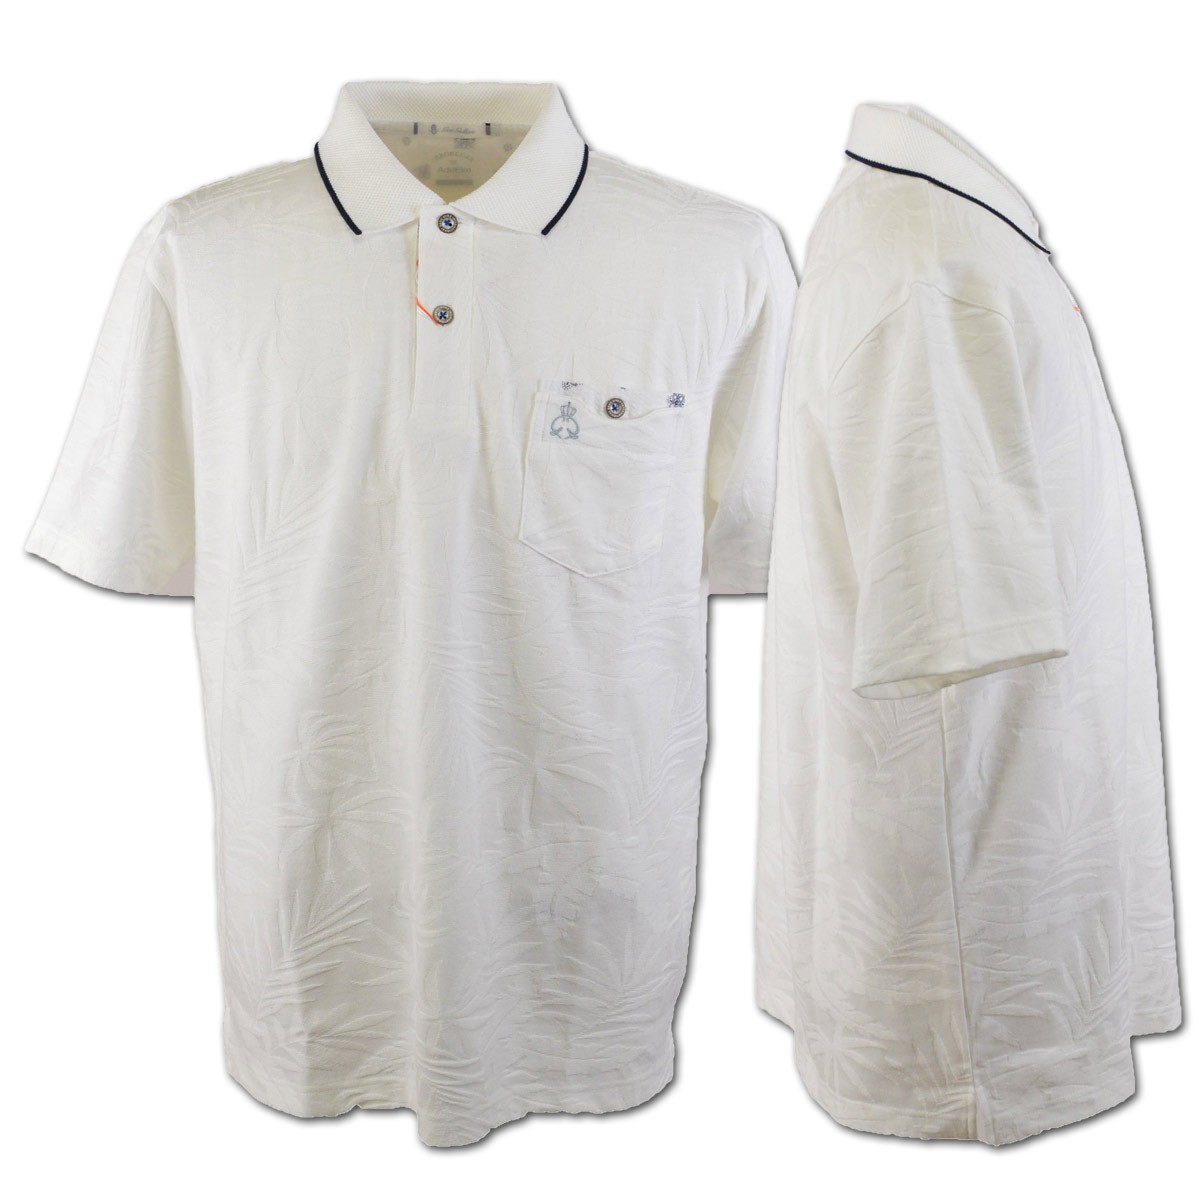 バジエ 半袖ポロシャツ メンズ 春夏用 白 黒 紺 M L LL 3210-2503